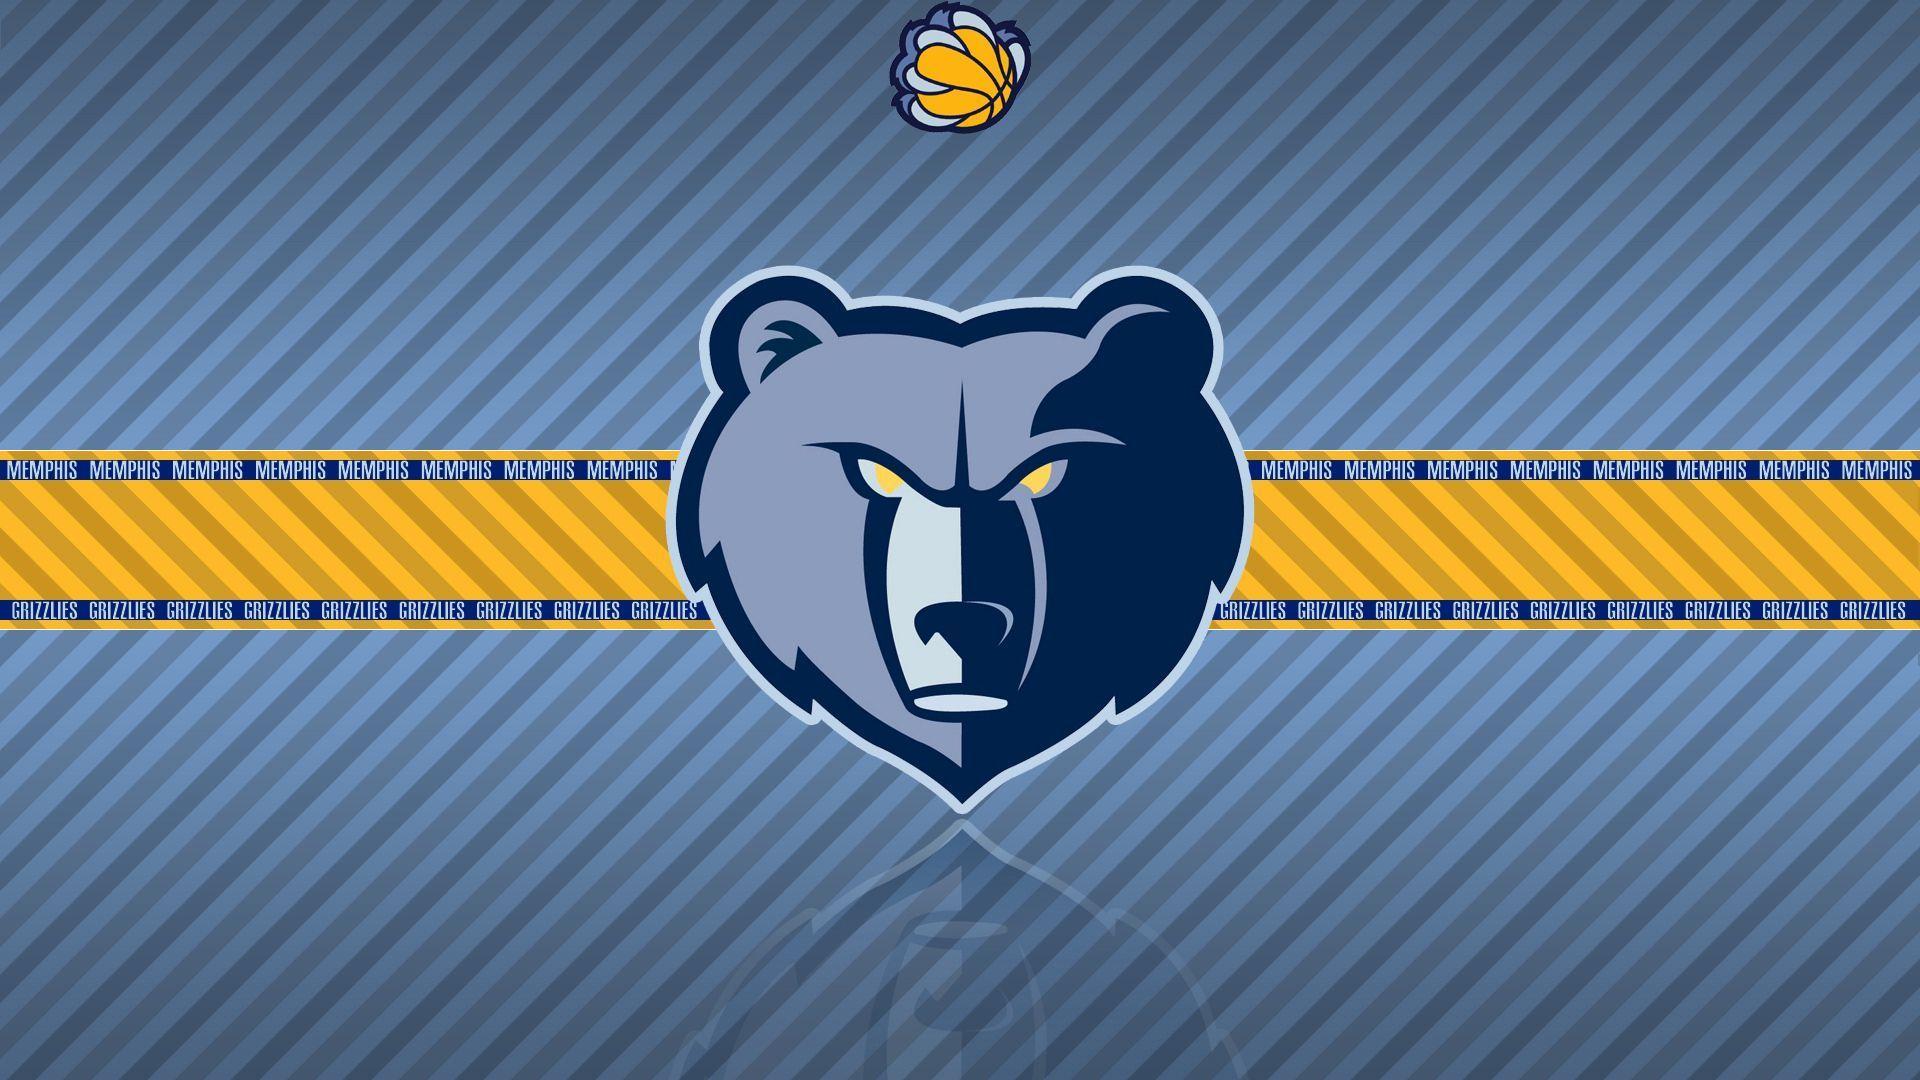 Download NBA Teams Logo Wallpaper Gallery